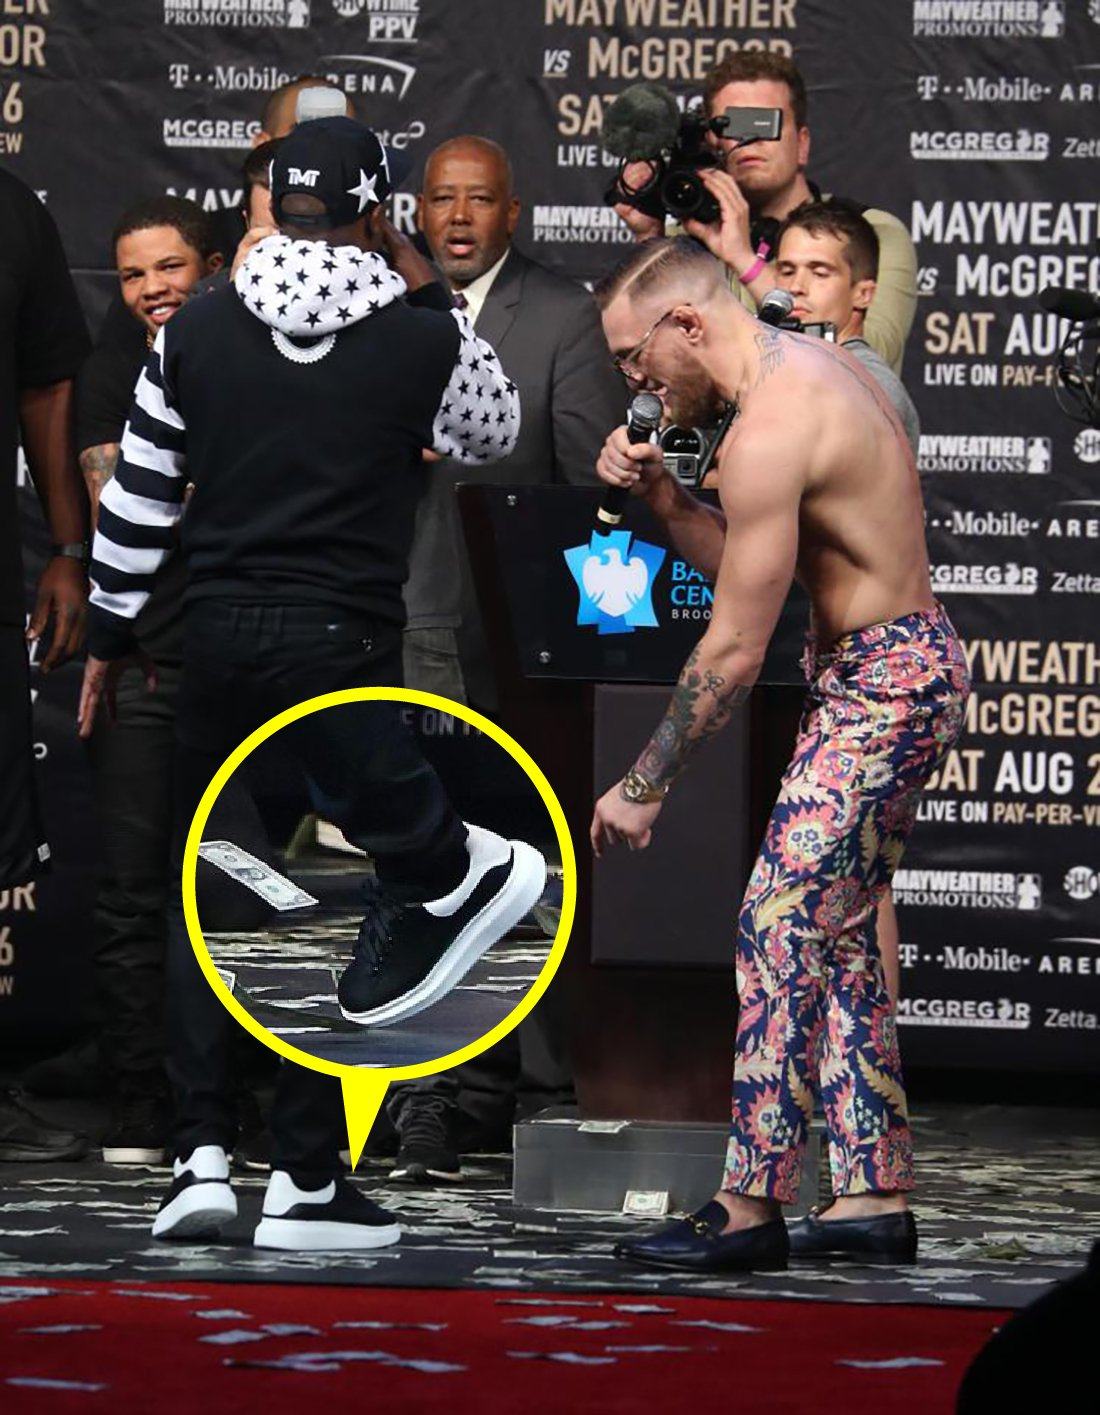 Tanzania Factibilidad persuadir Los 5 momentos en los que los sneakers aplicaron un knock-out en la pelea  entre McGregor y Mayweather